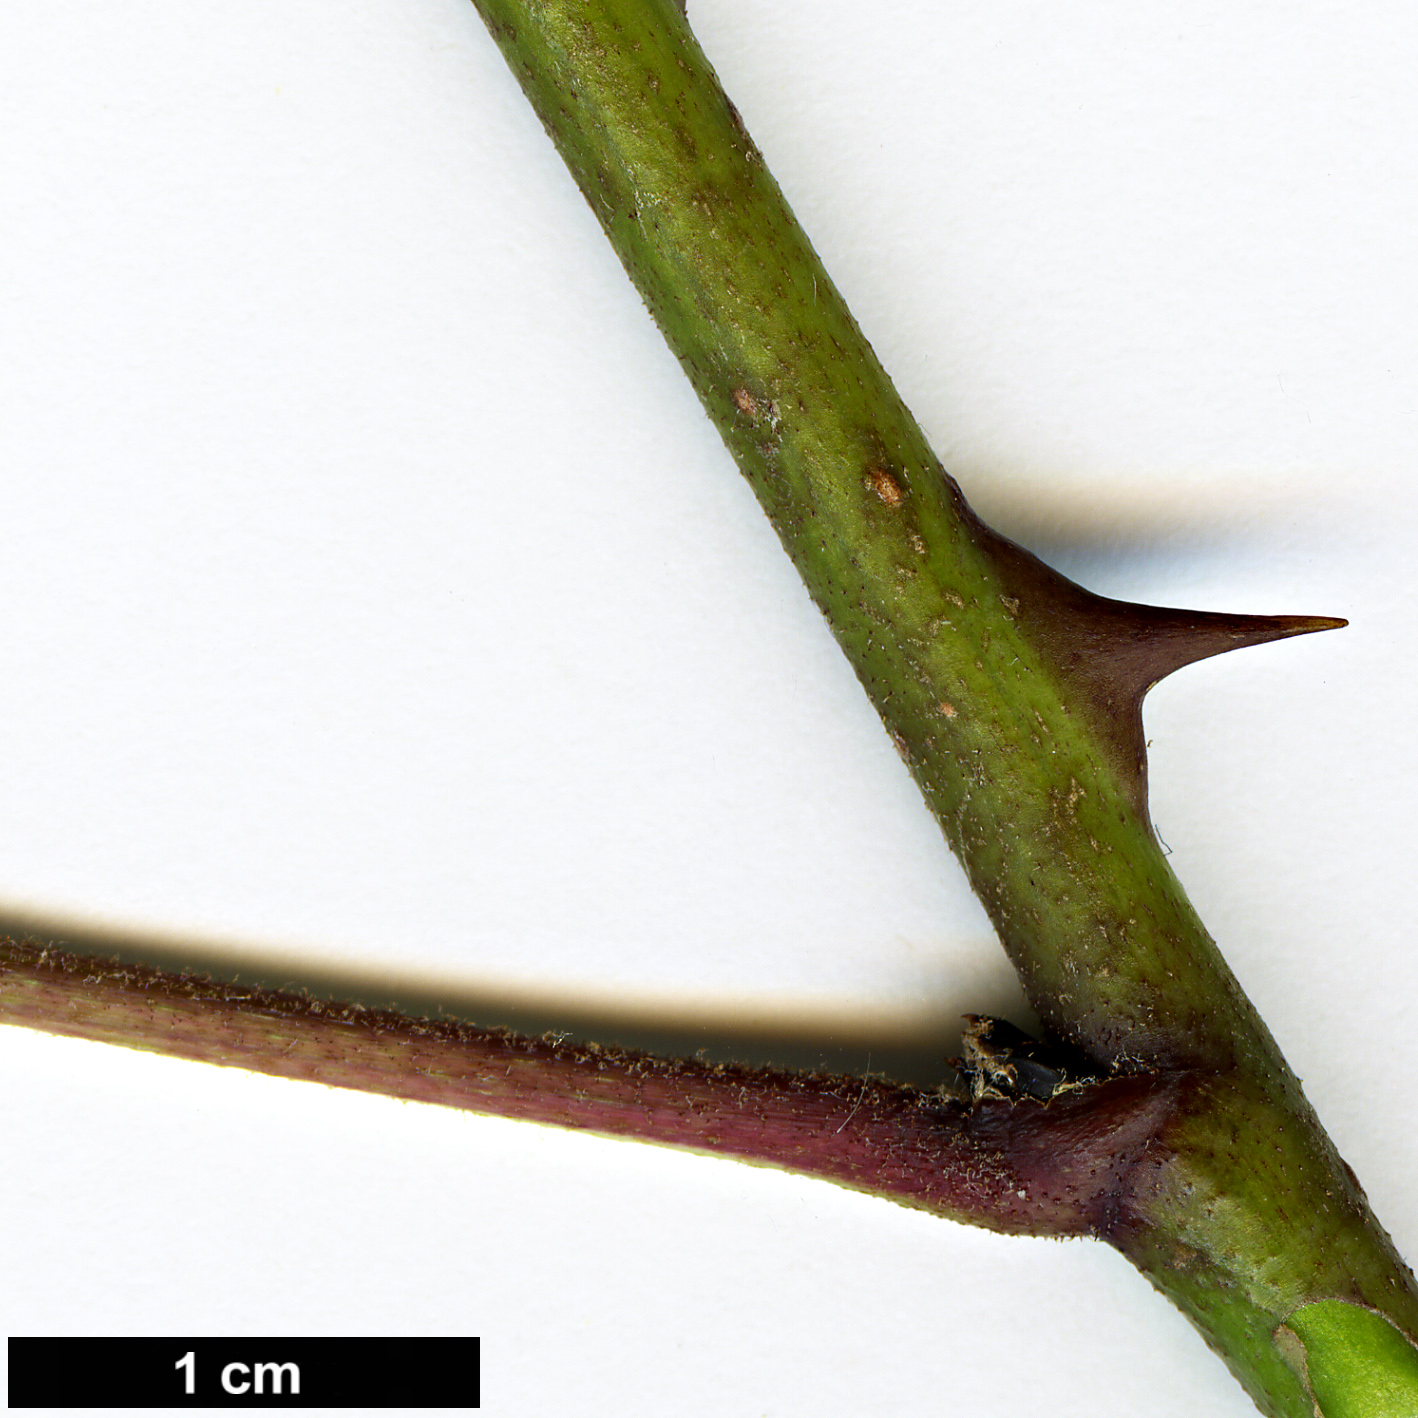 High resolution image: Family: Araliaceae - Genus: Eleutherococcus - Taxon: leucorrhizus - SpeciesSub: var. leucorrhizus